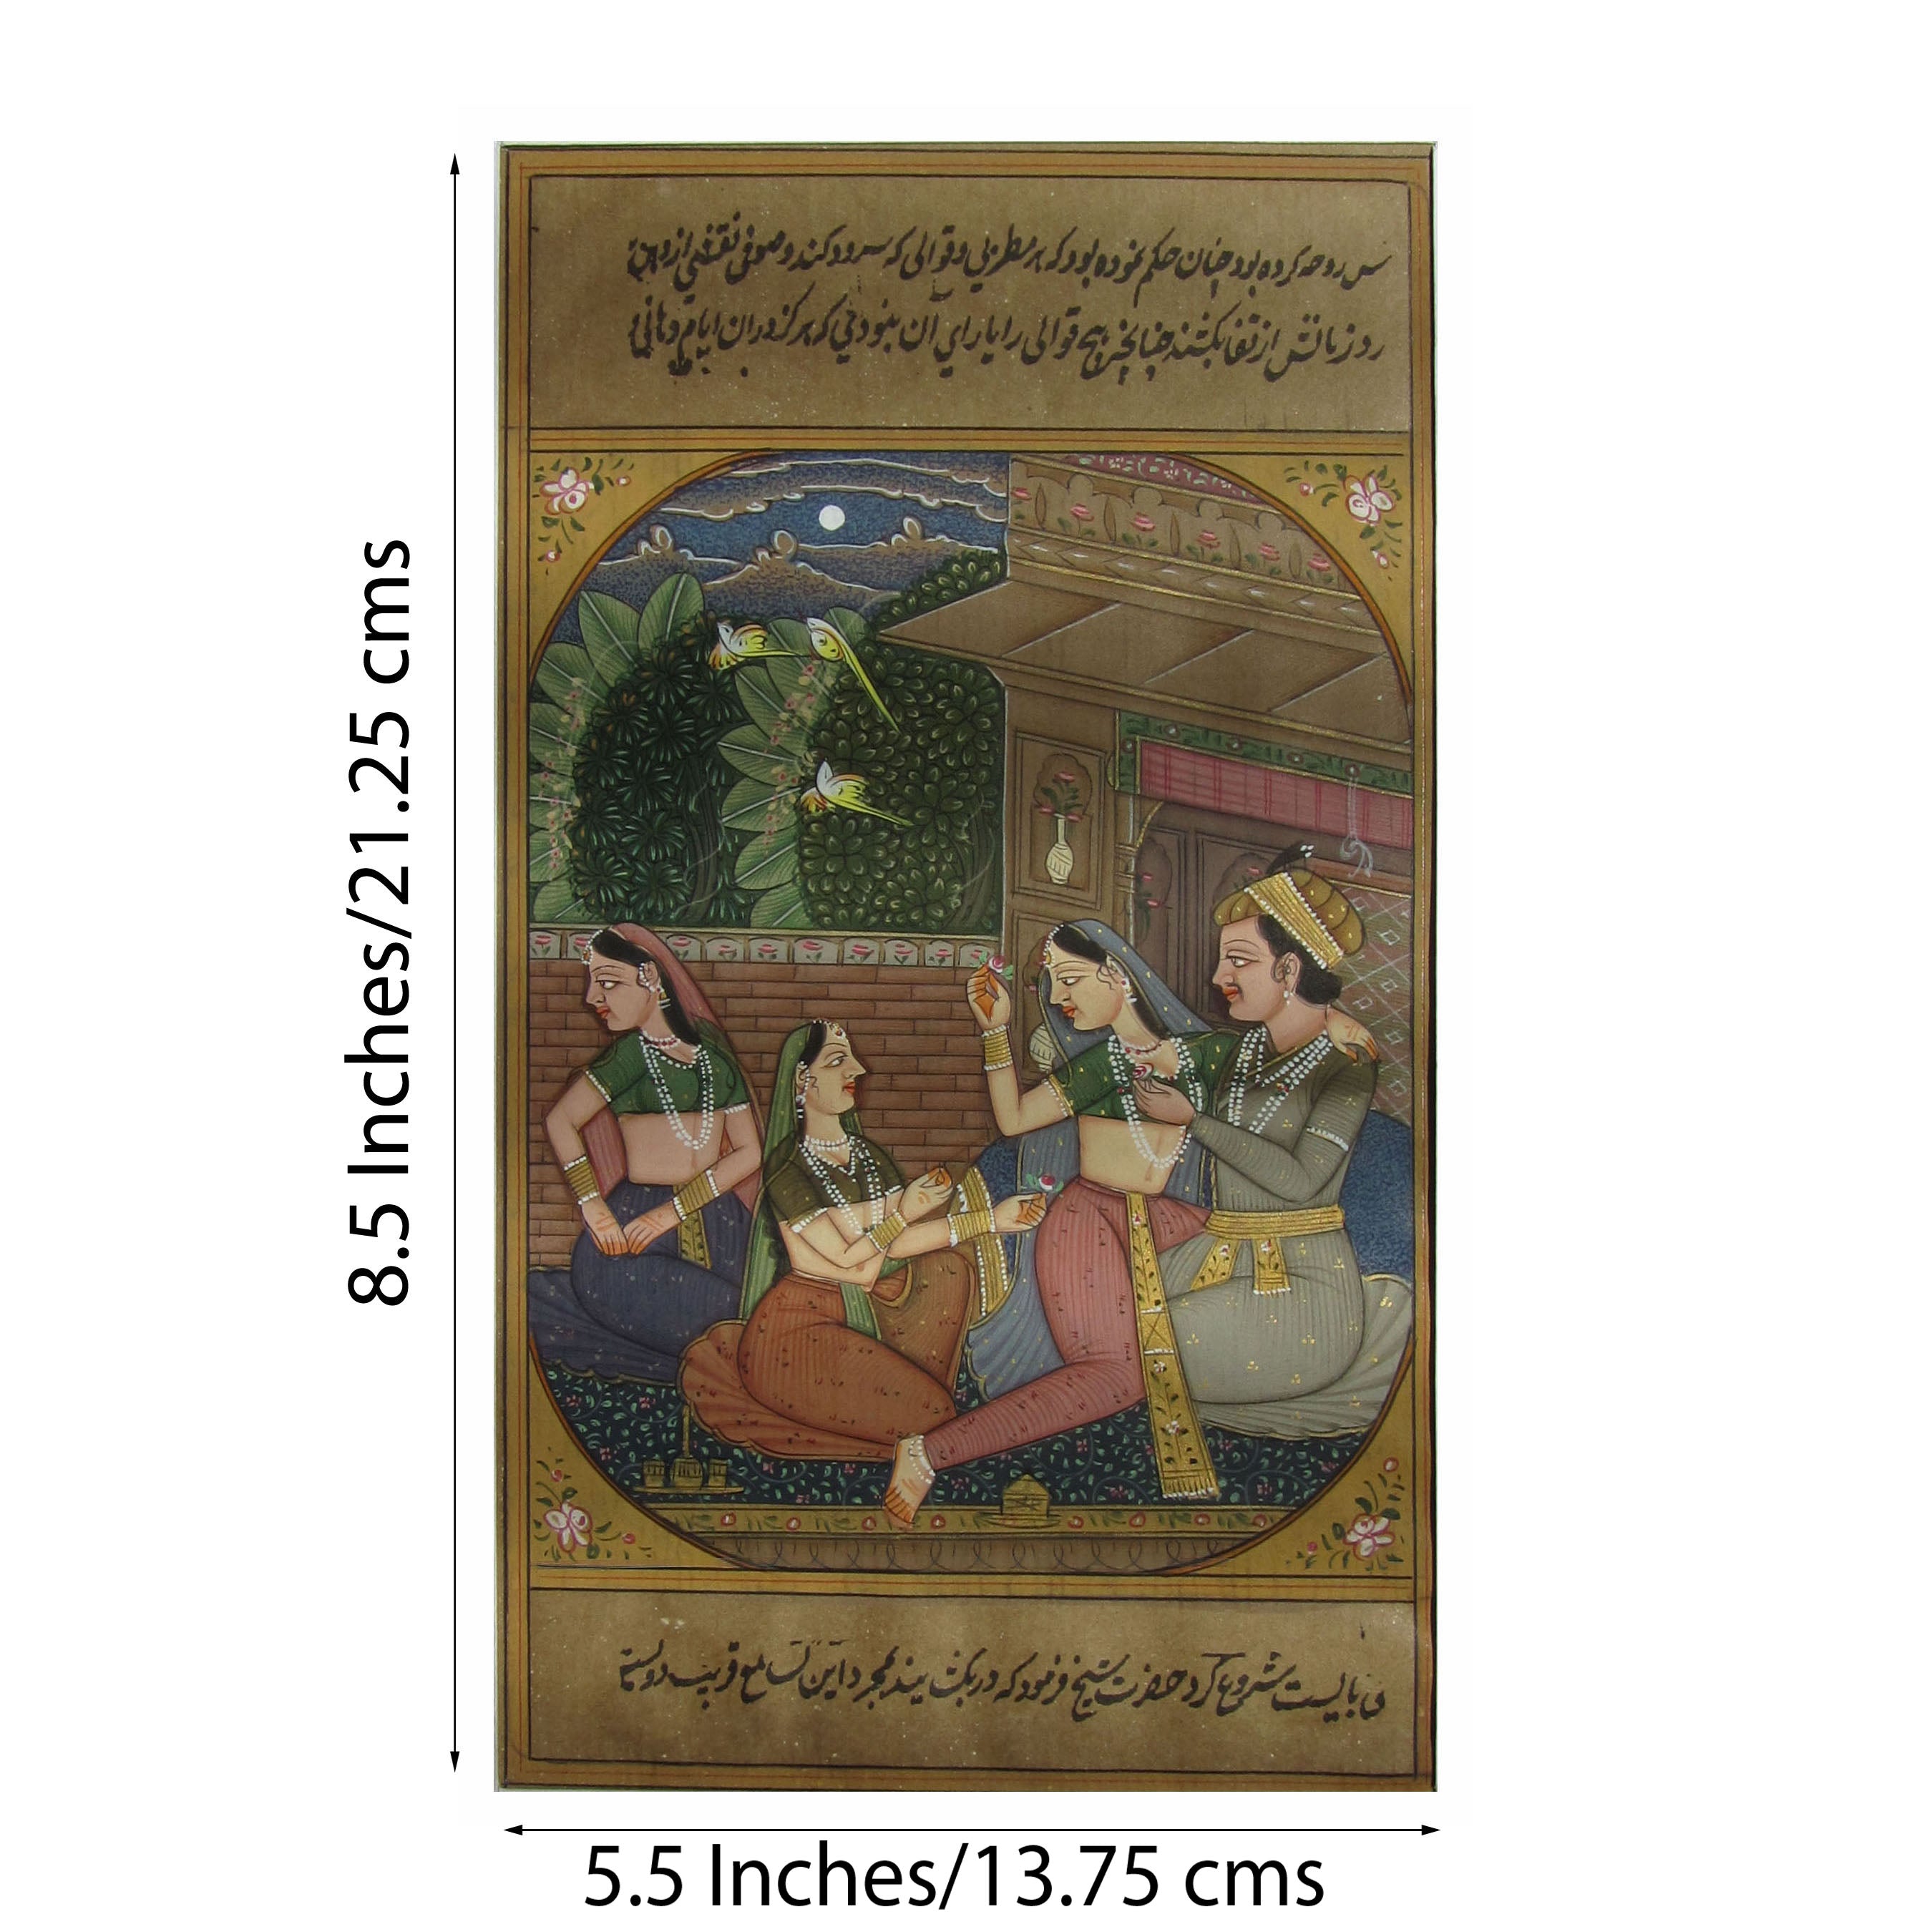 Regal Entertainment Mughal Painting Original Art Paper Painting 1